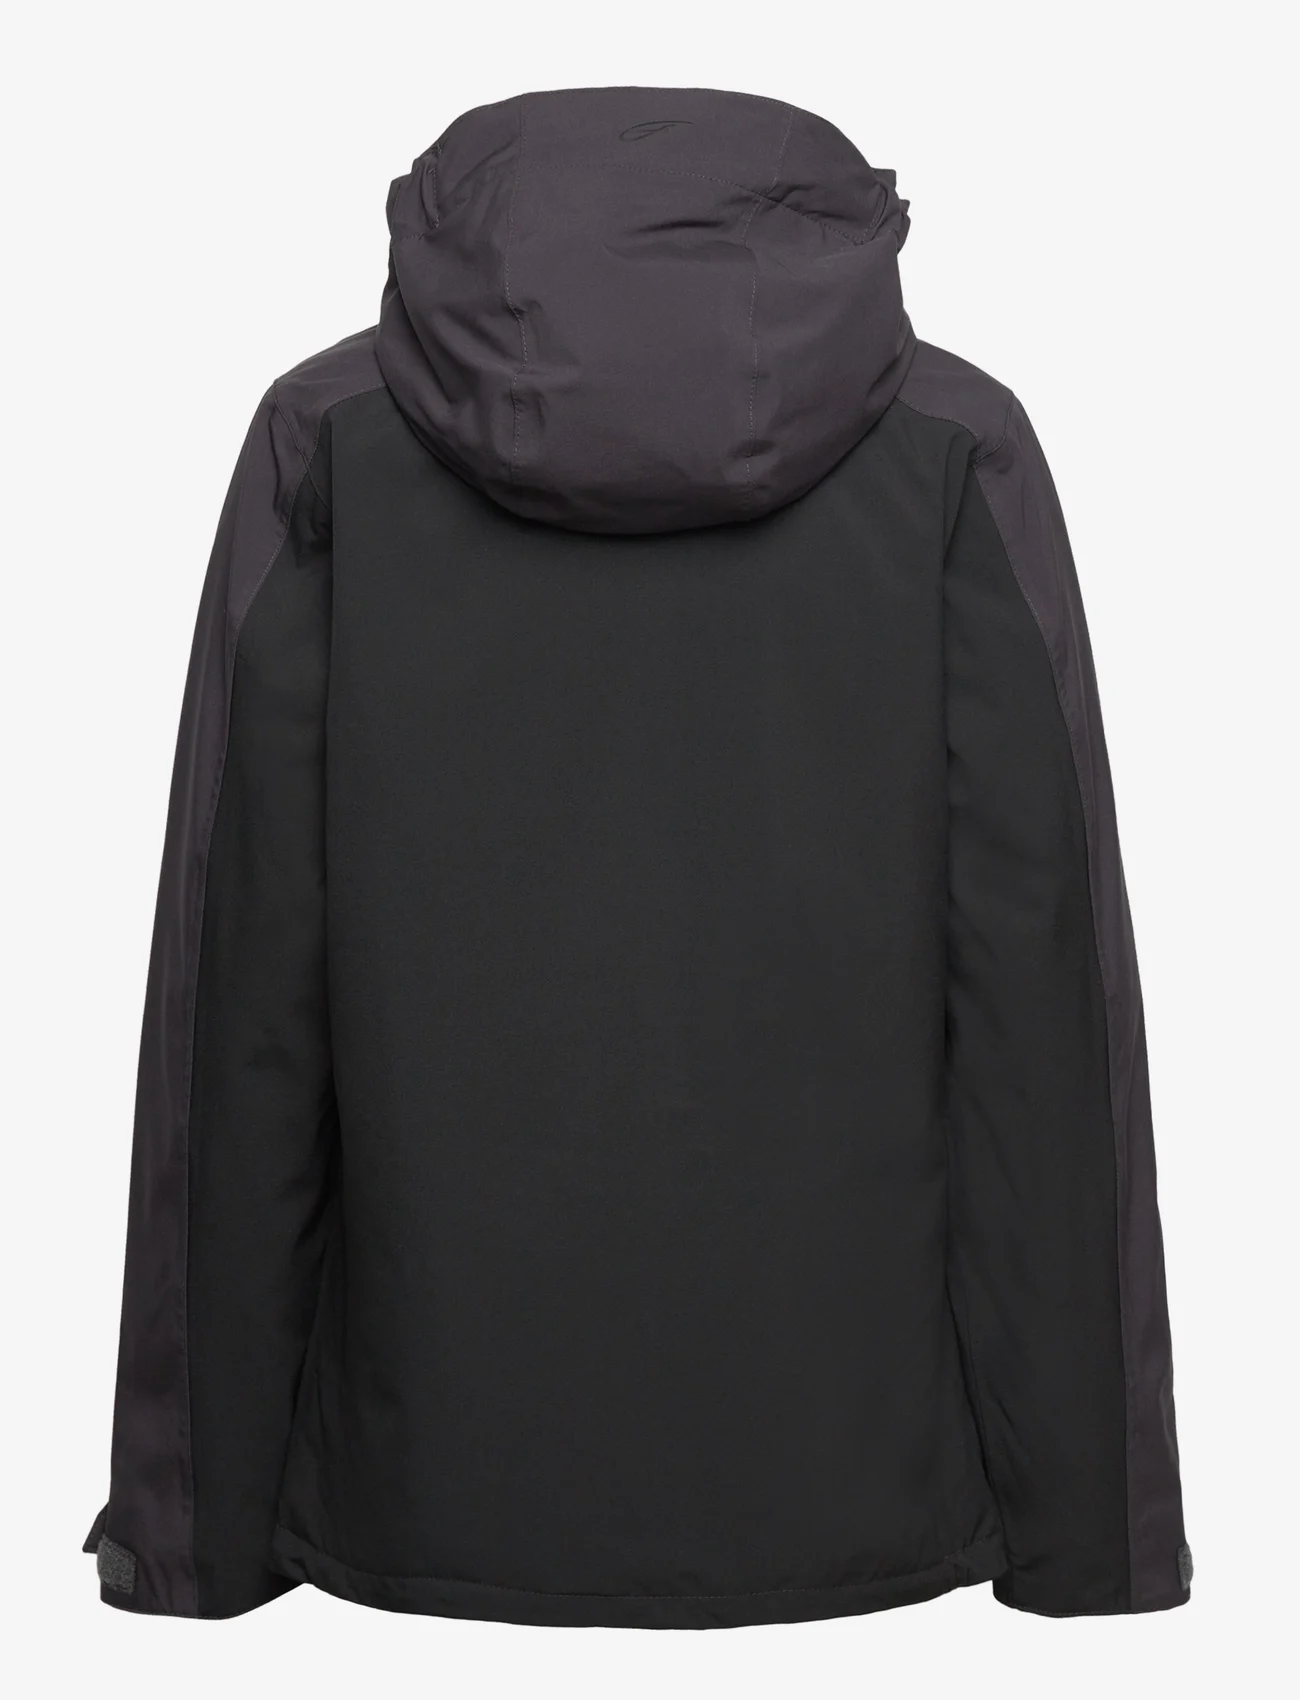 Five Seasons - NOUX JKT JR - kurtki z powłoką shell i przeciwdeszczowe - obsidian - 1